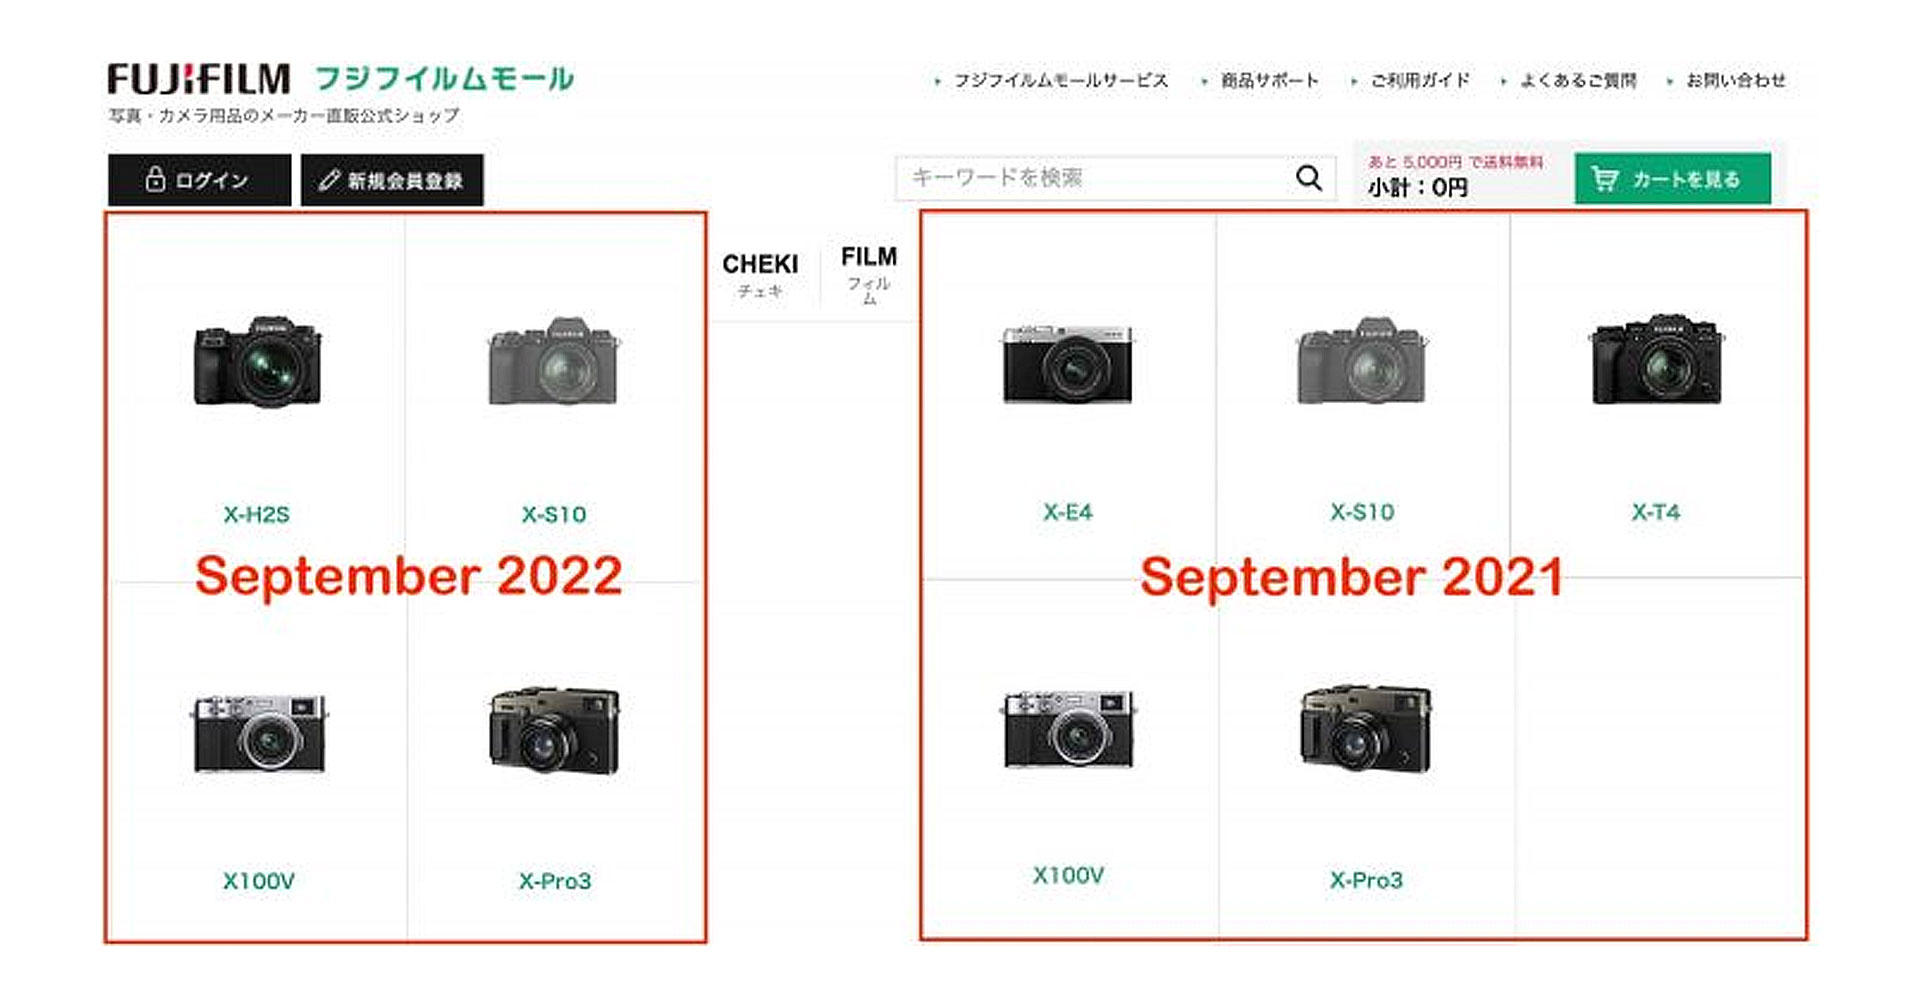 FUJIFILM ถอดกล้อง X-T4 และ X-E4 ออกจากหน้า แคตตาล็อกหรือนี่จะเป็นสัญญาณใกล้เปิดตัวรุ่นใหม่!?